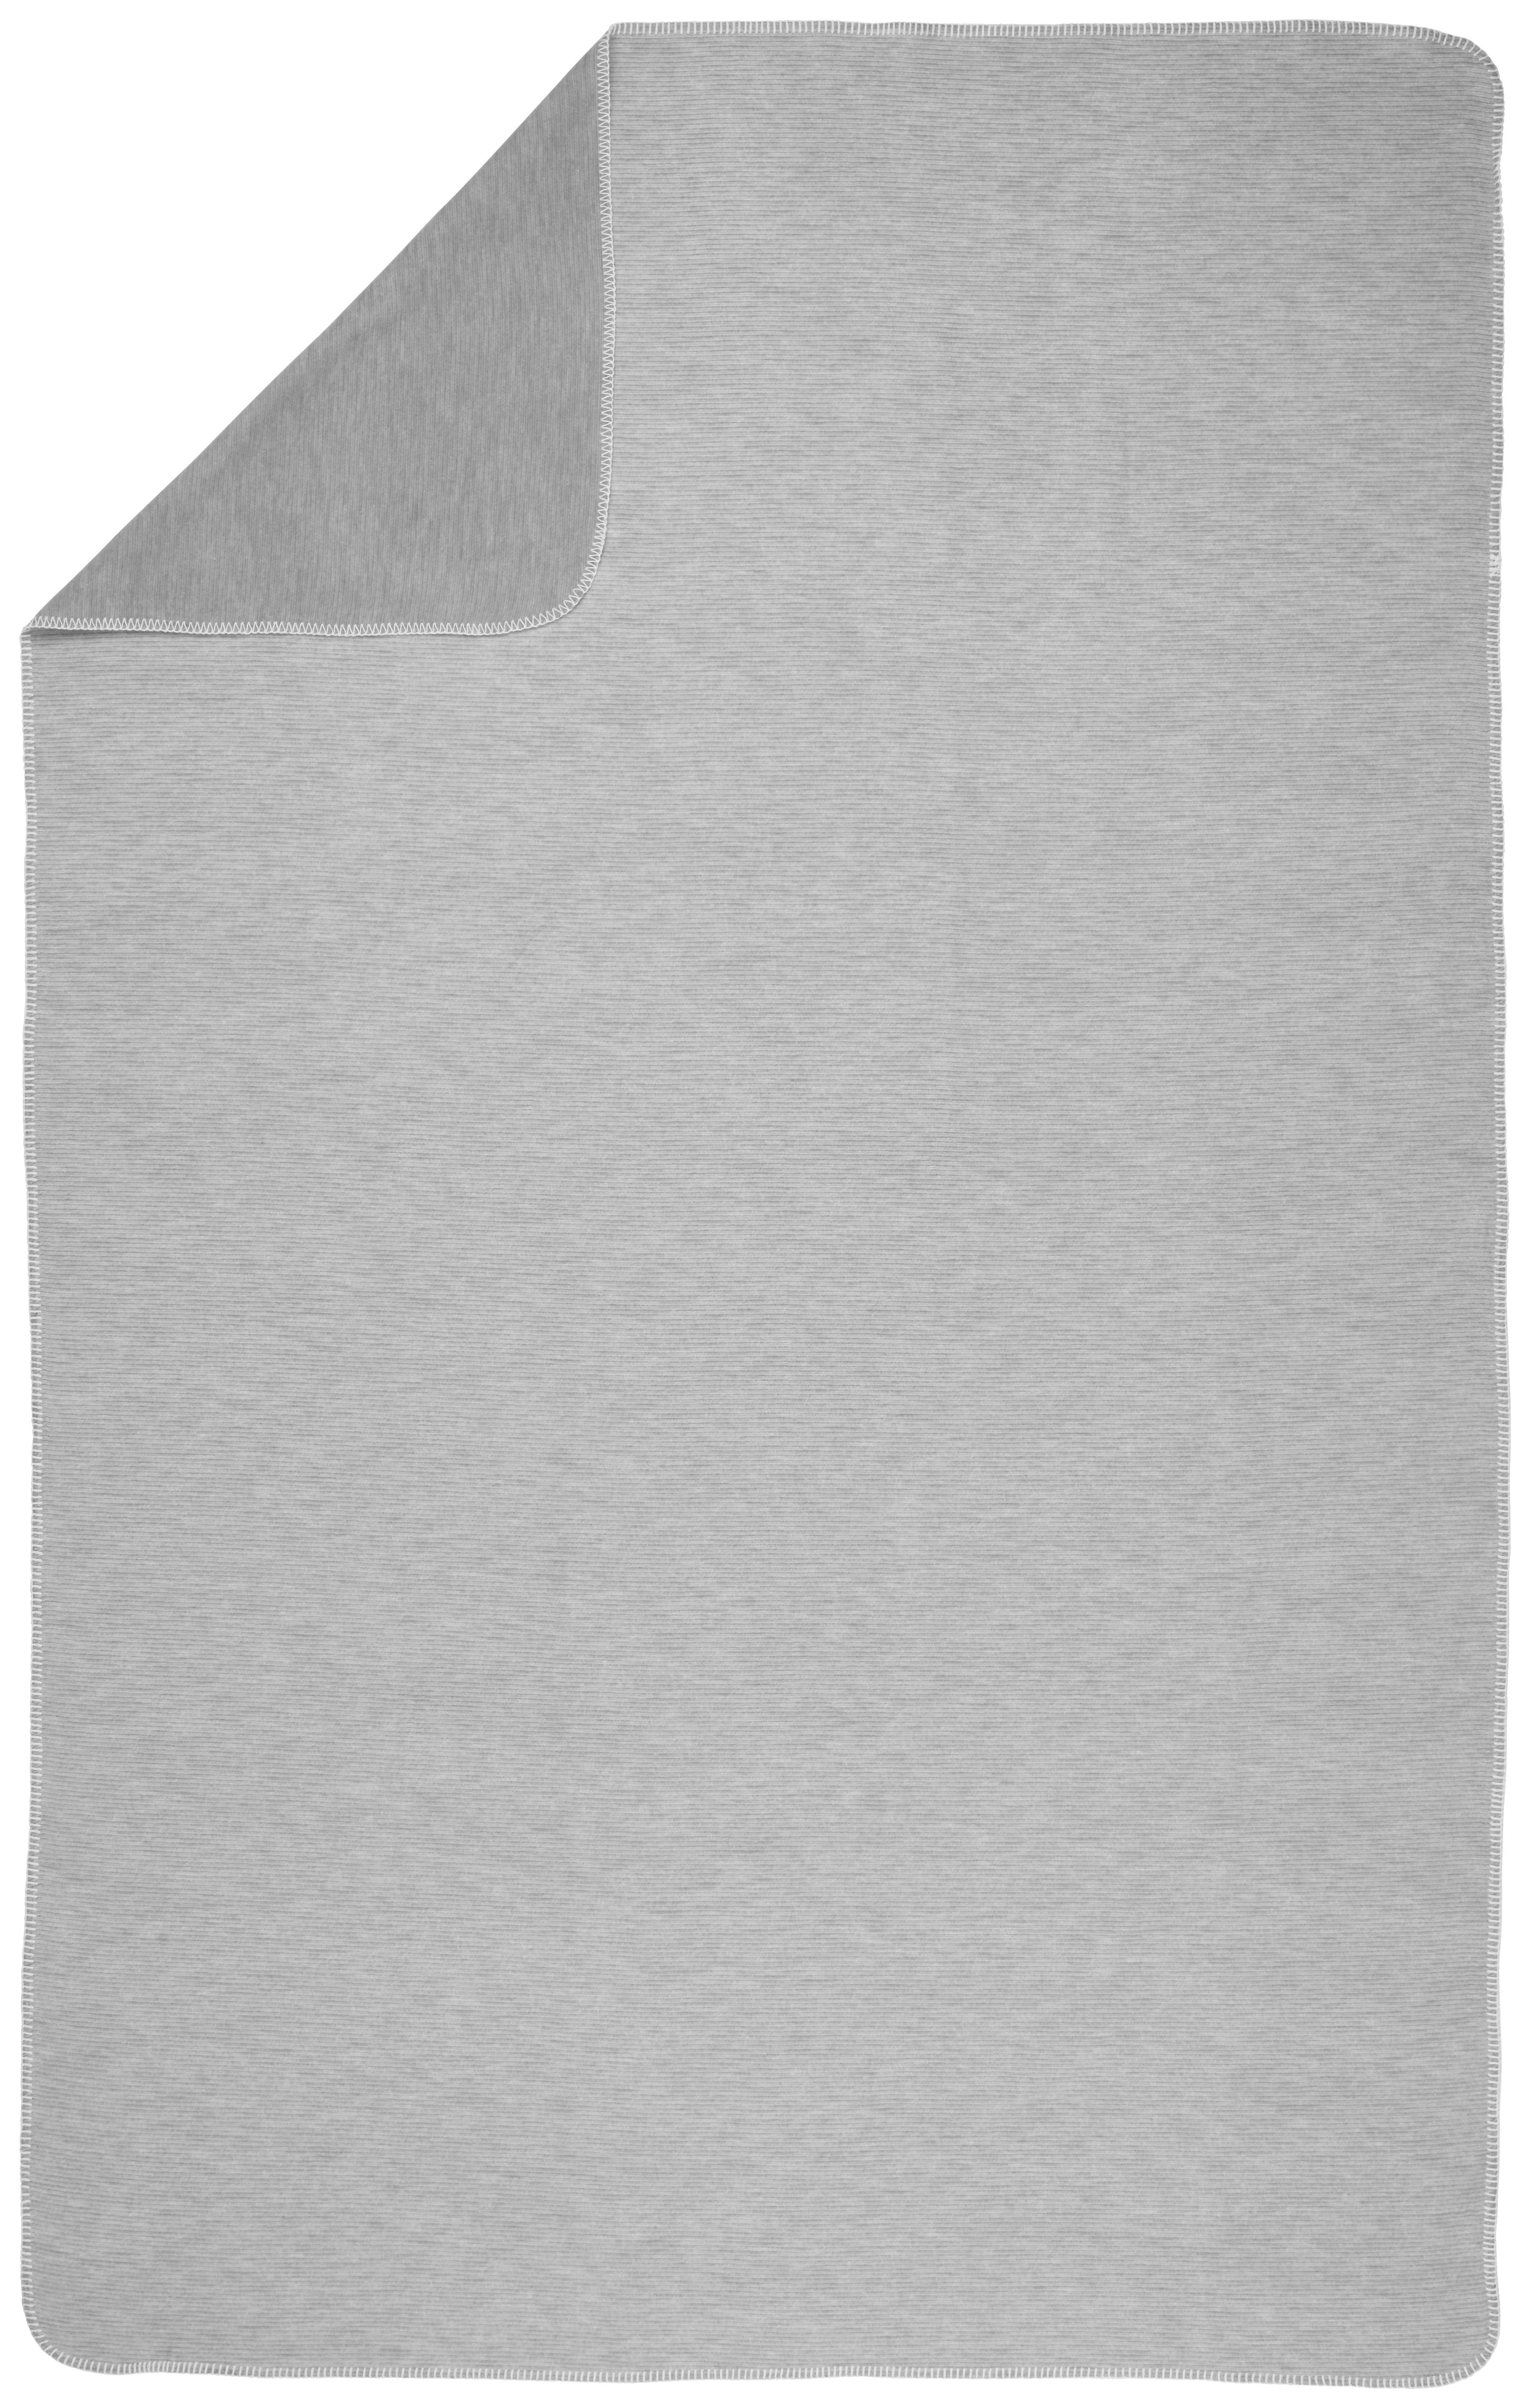 PLAID 140/200 cm  - Grau, Basics, Textil (140/200cm) - Bio:Vio